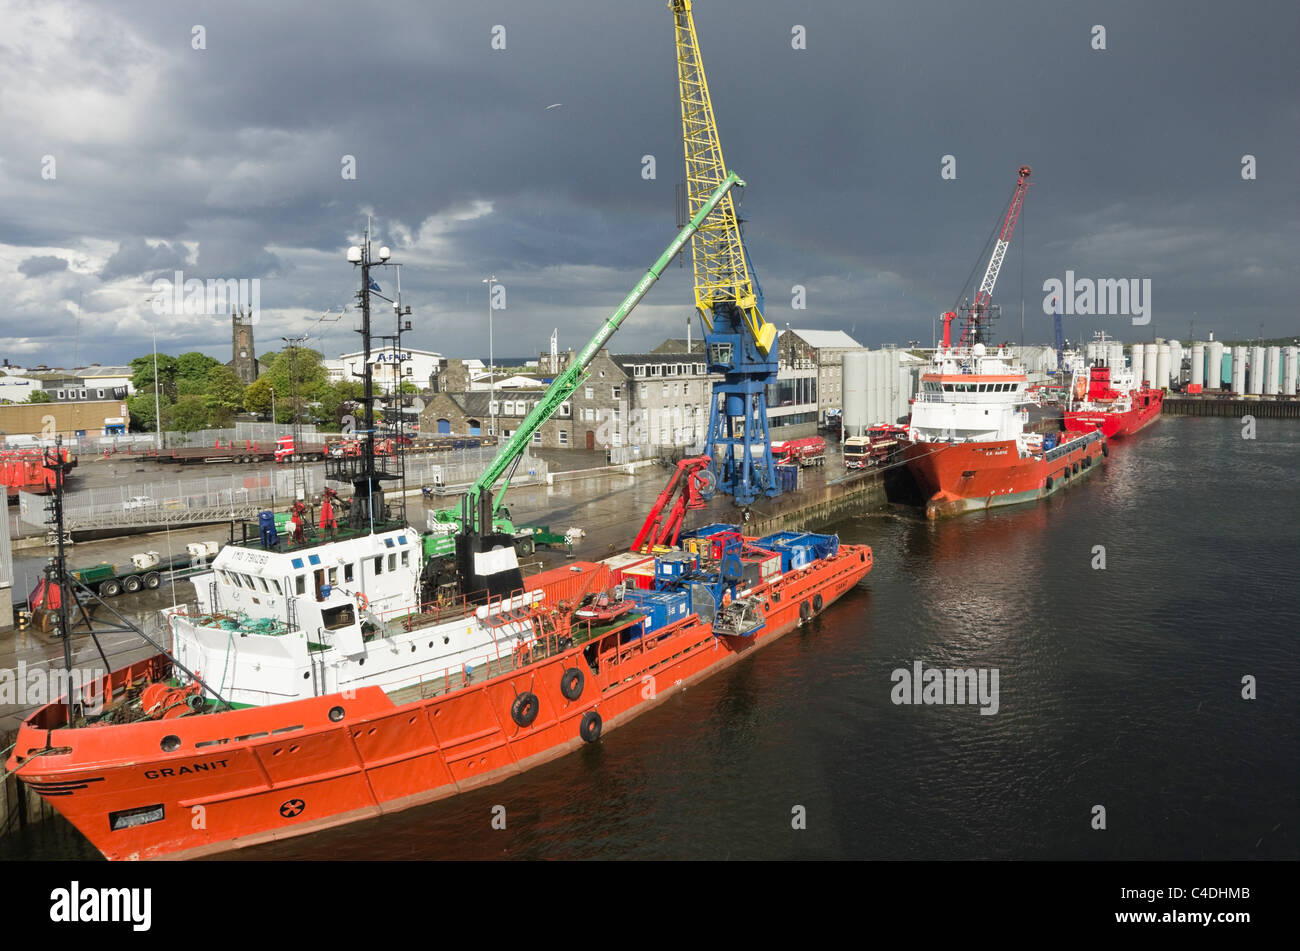 Angedockten Schiffe im Hafen die Versorgung der Bohrinseln in der Nordsee Bohrinseln. Aberdeen, Aberdeenshire, Schottland, Großbritannien, Großbritannien Stockfoto